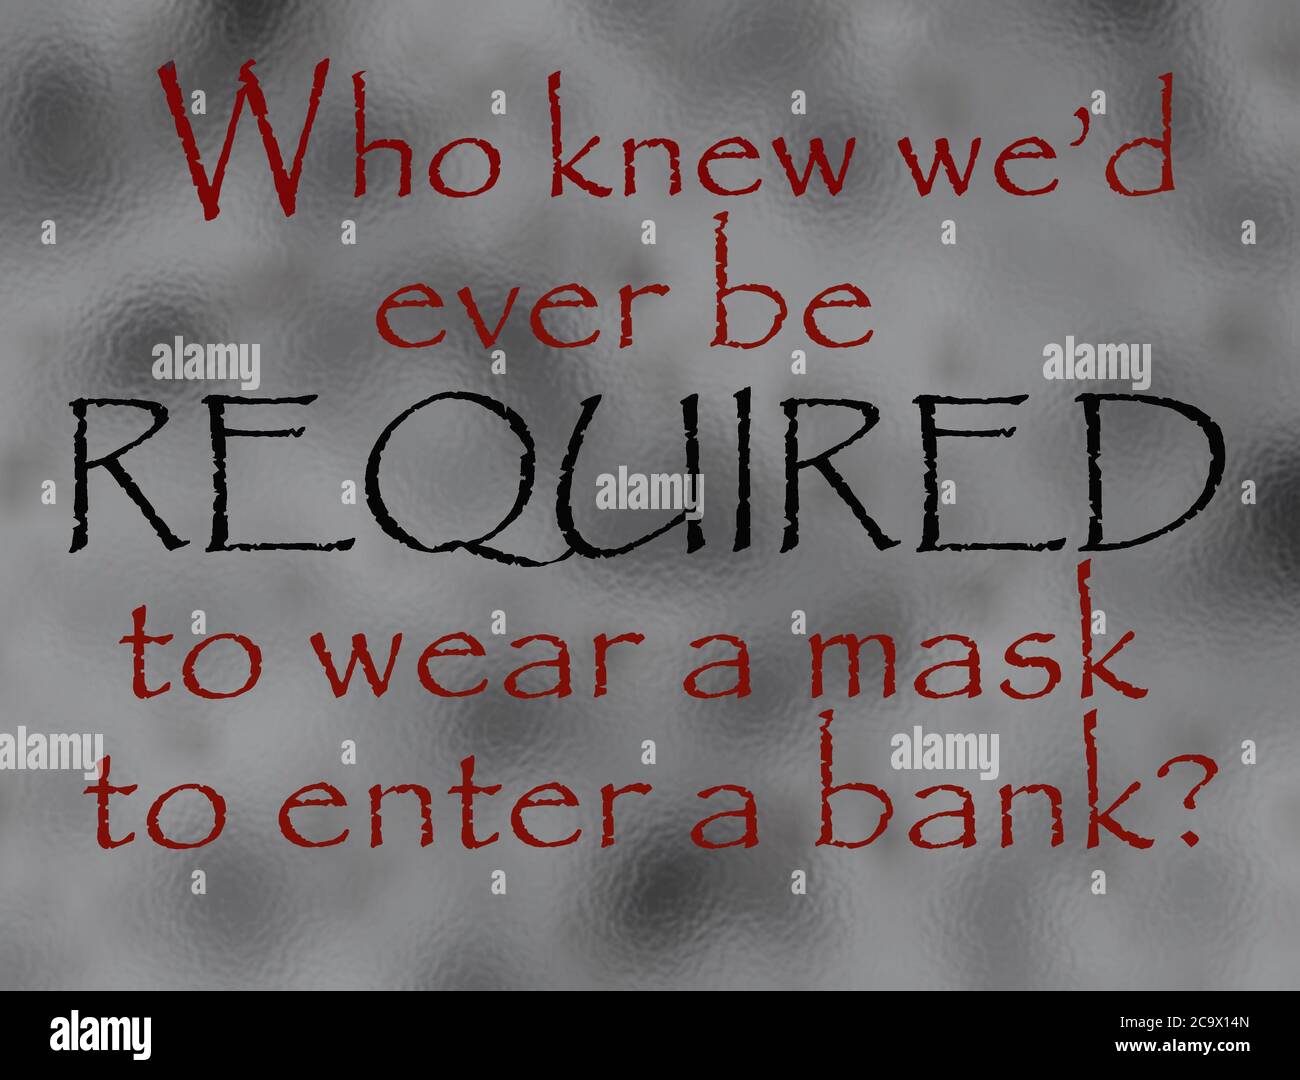 Textgrafik, humorvoller Einblick in die Uneinigkeit, eine Maske tragen zu müssen, um eine Bank zu betreten Stockfoto